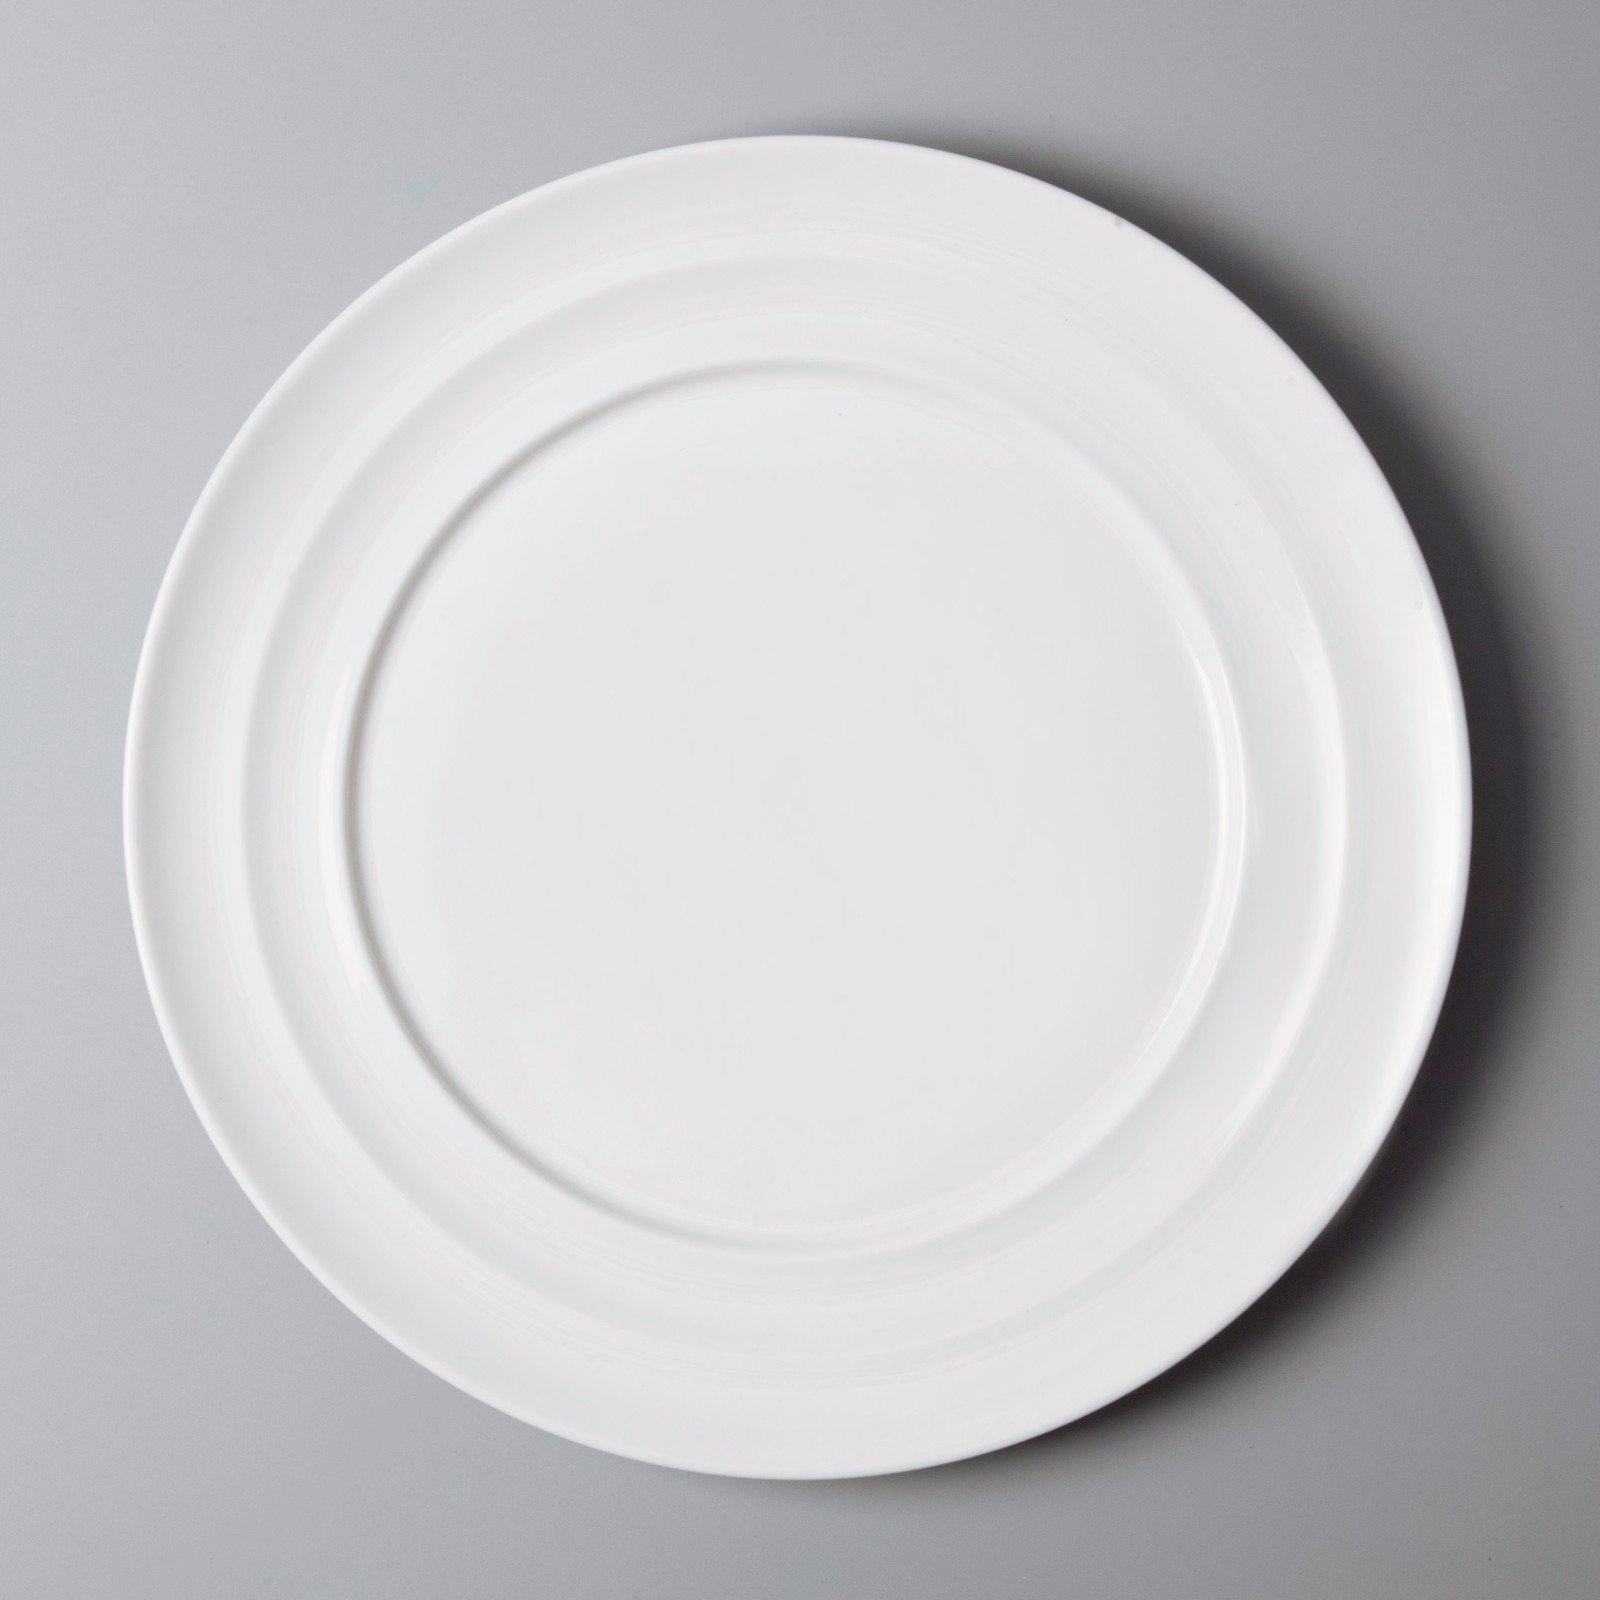 Italian style commercial restaurant plates manufacturer for restaurant-3